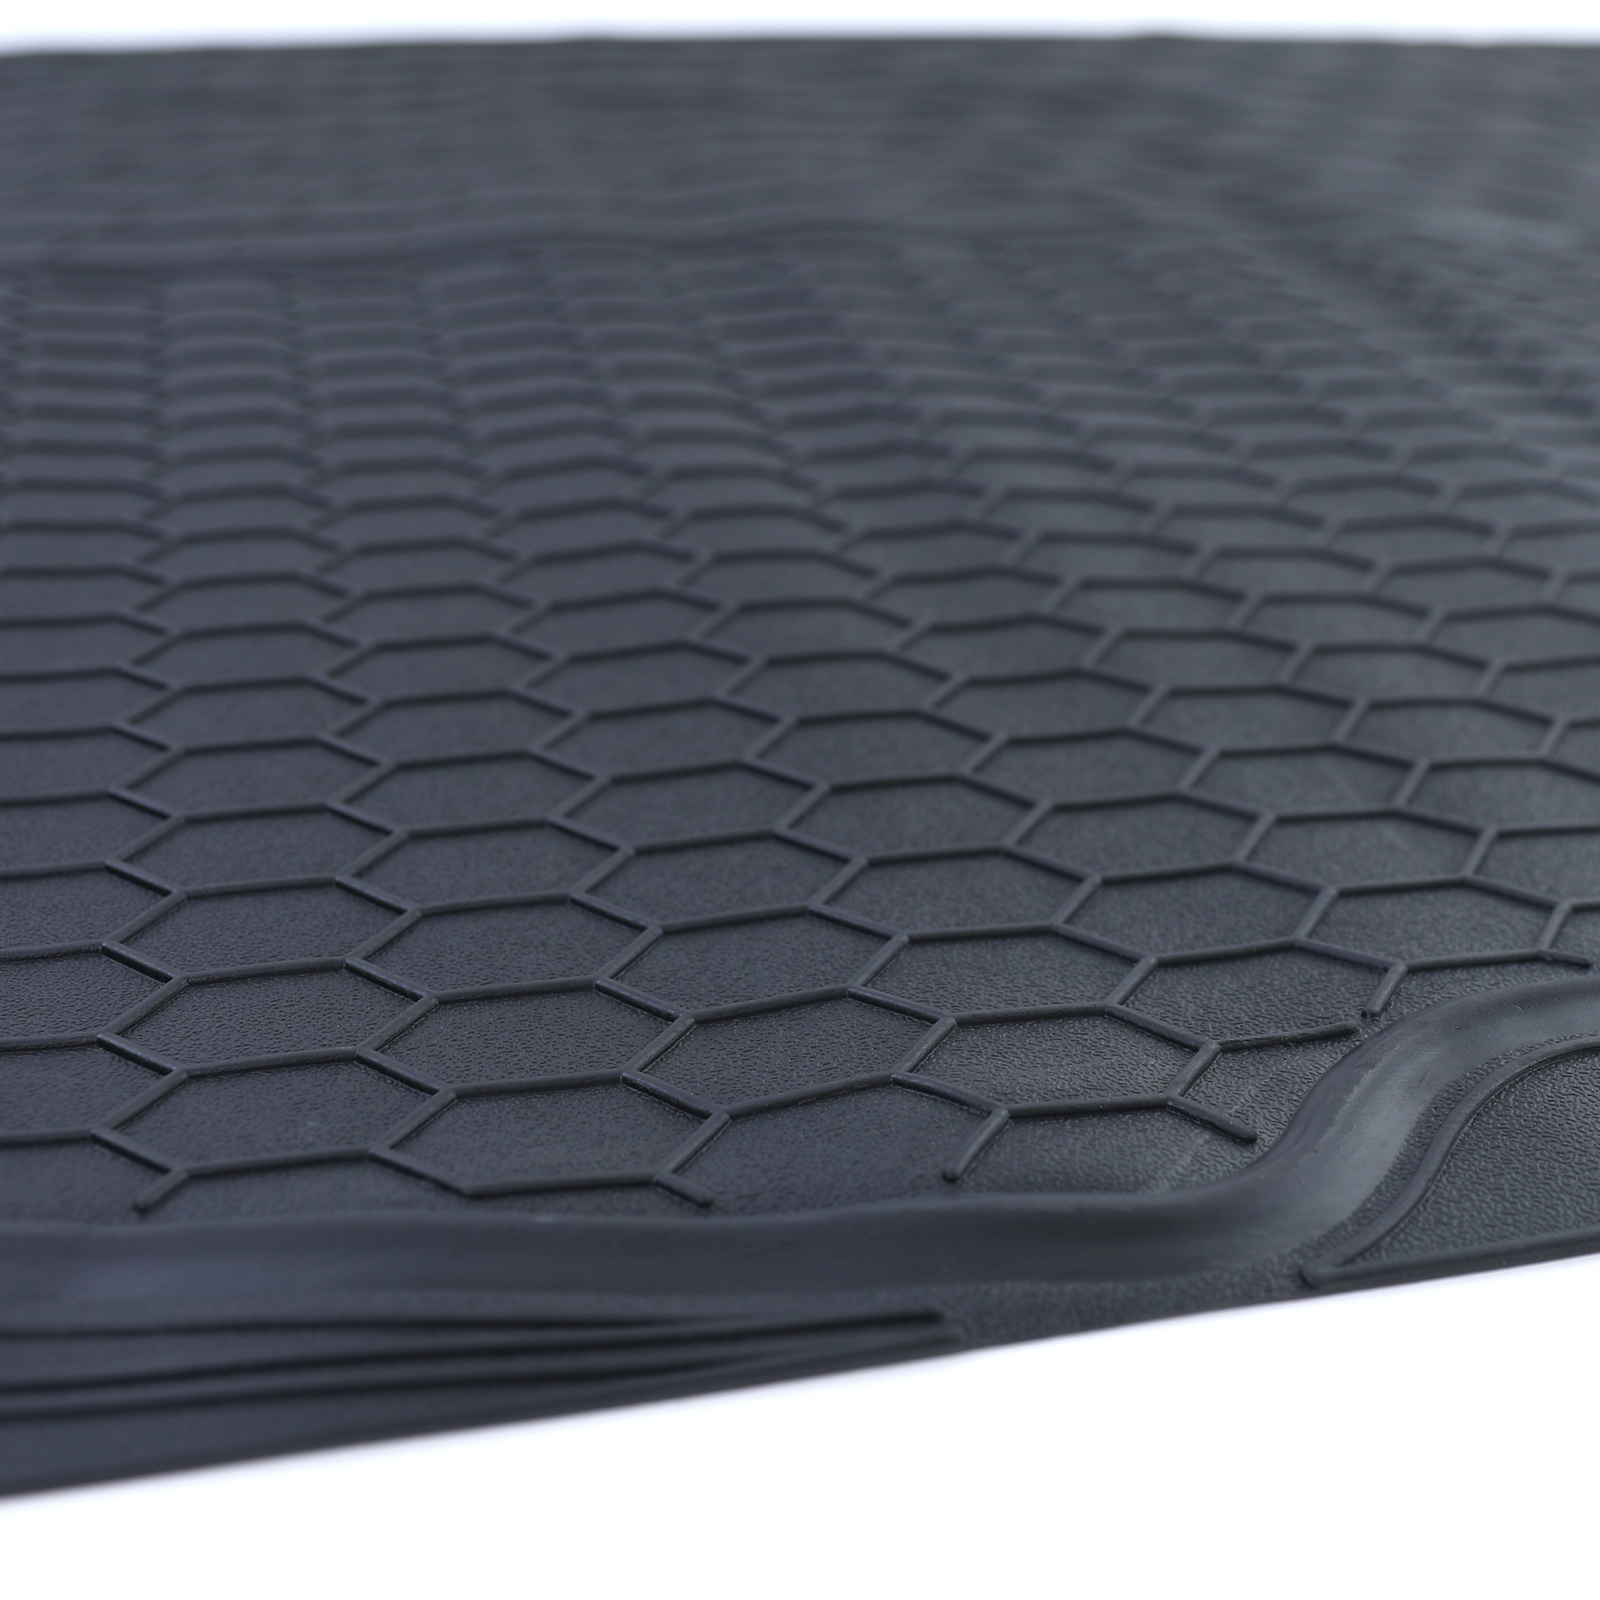 Kofferraummatte PVC Gummi Schutz Universal zuschneidbar Schwarz 108x140cm  kaufen